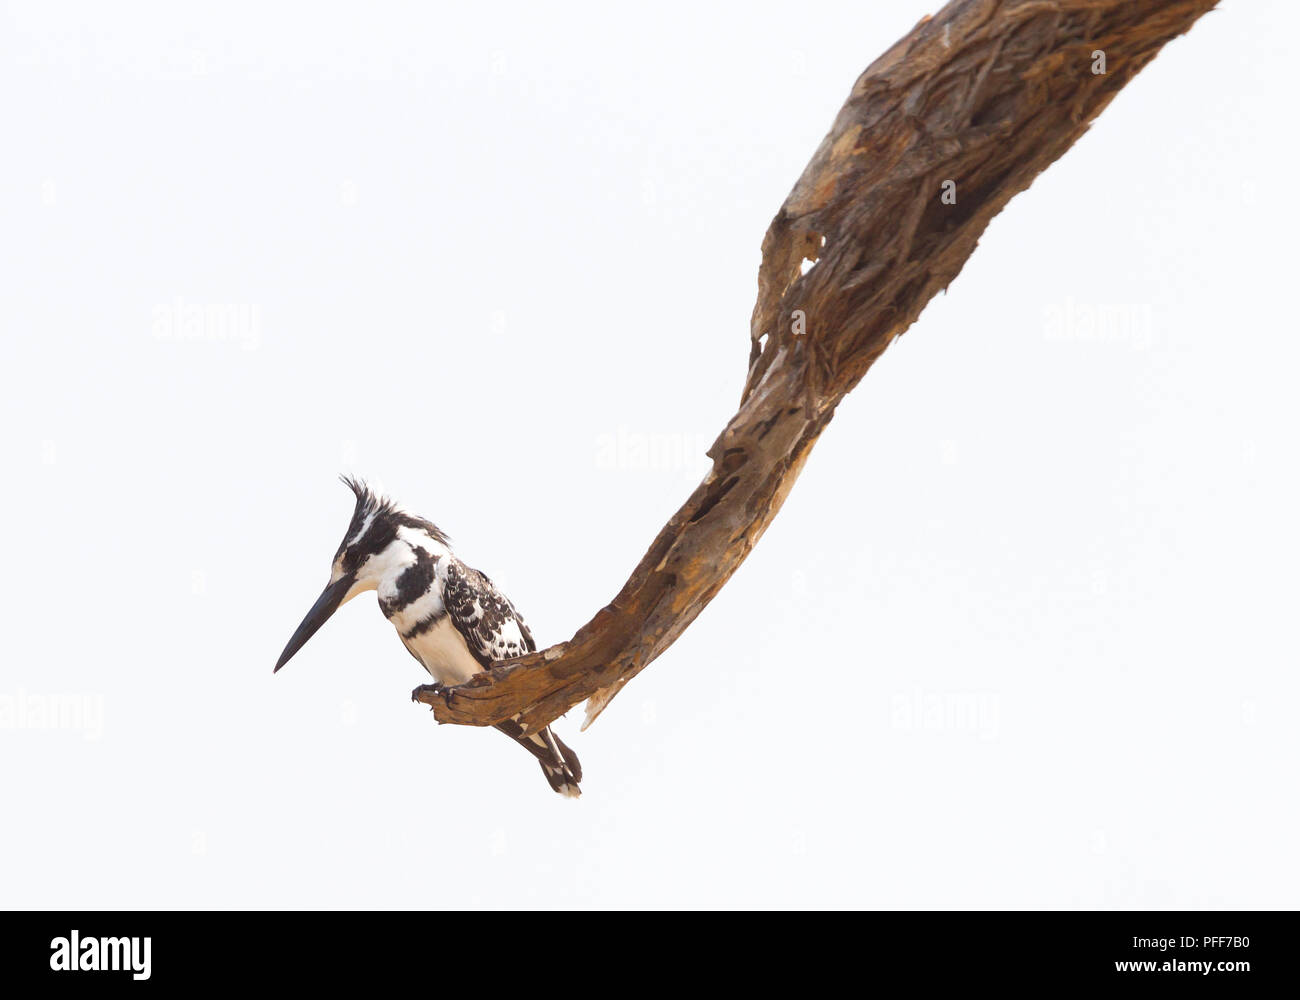 Pied Kingfisher assis dans un arbre surplombant ses aires de chasse, la Namibie Banque D'Images